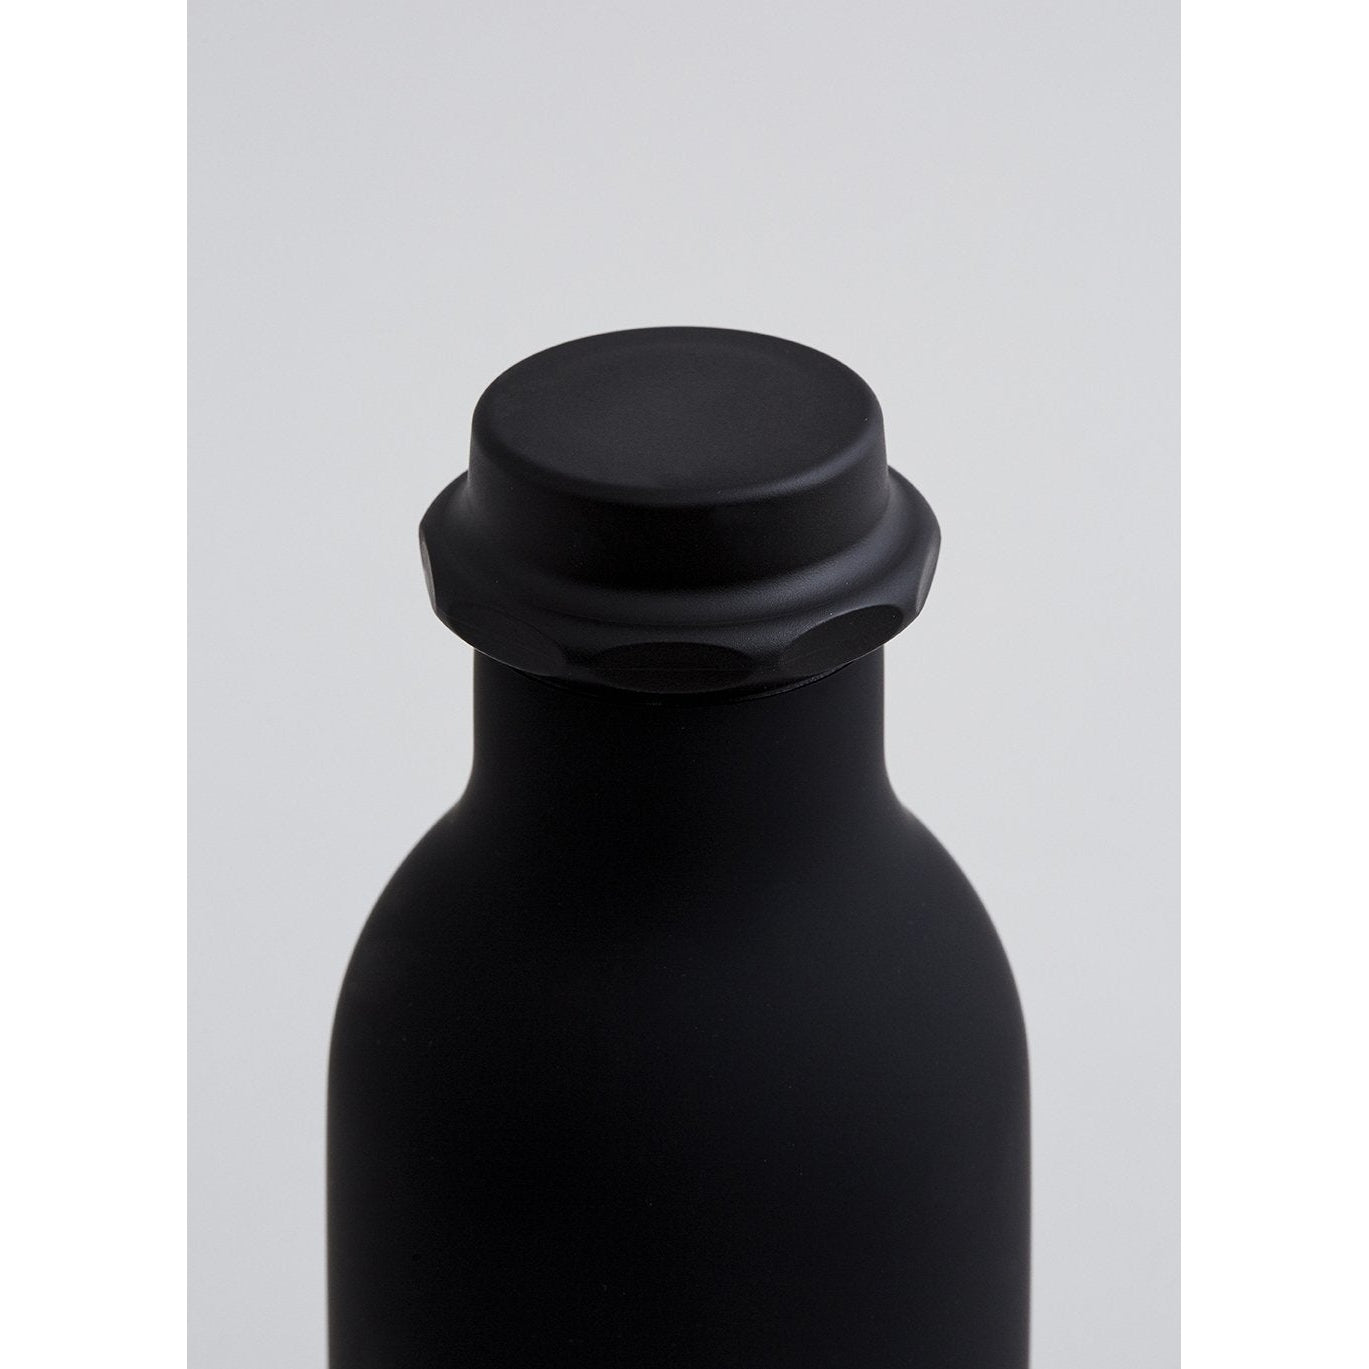 Design dopisy na láhev s vodou, černá